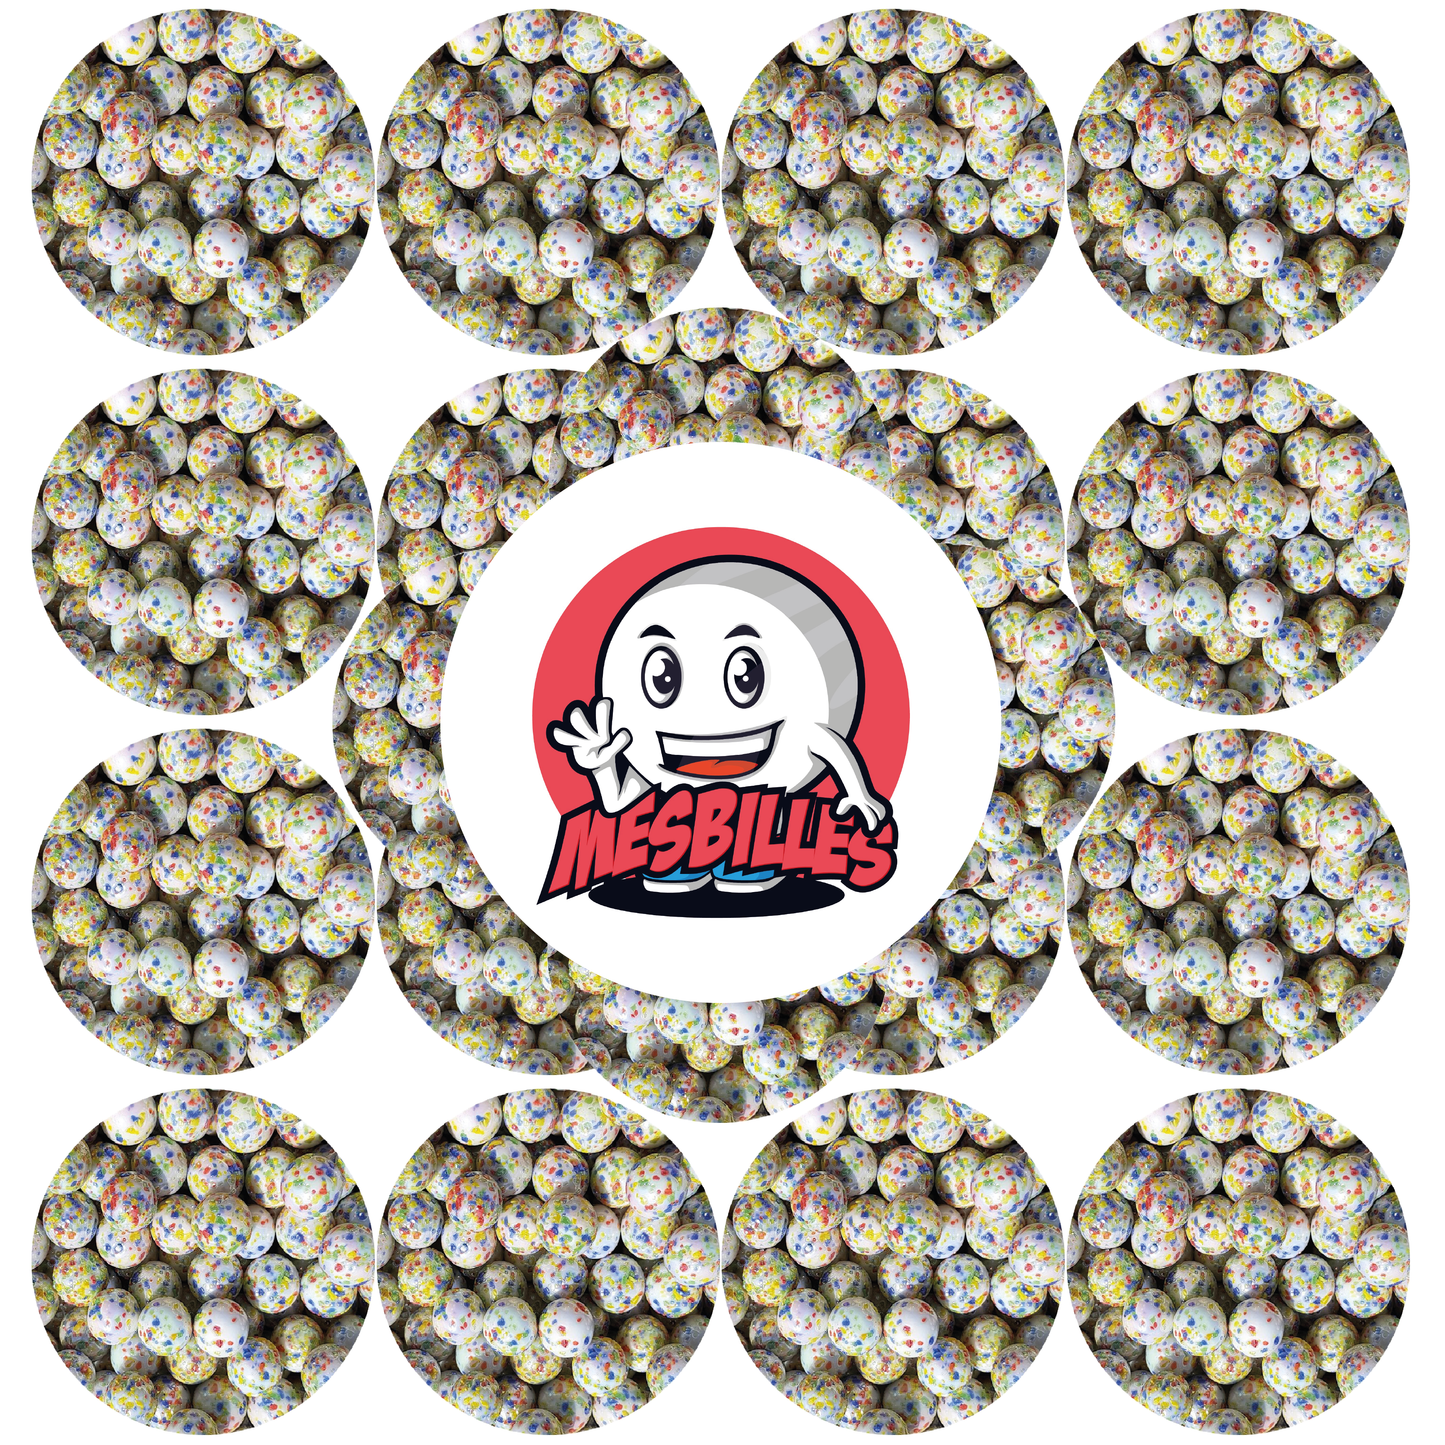 Image de la Mascotte MesBilles entourée de Billes 16 mm blanche opaque recouverte d'éclats multi-couleurs